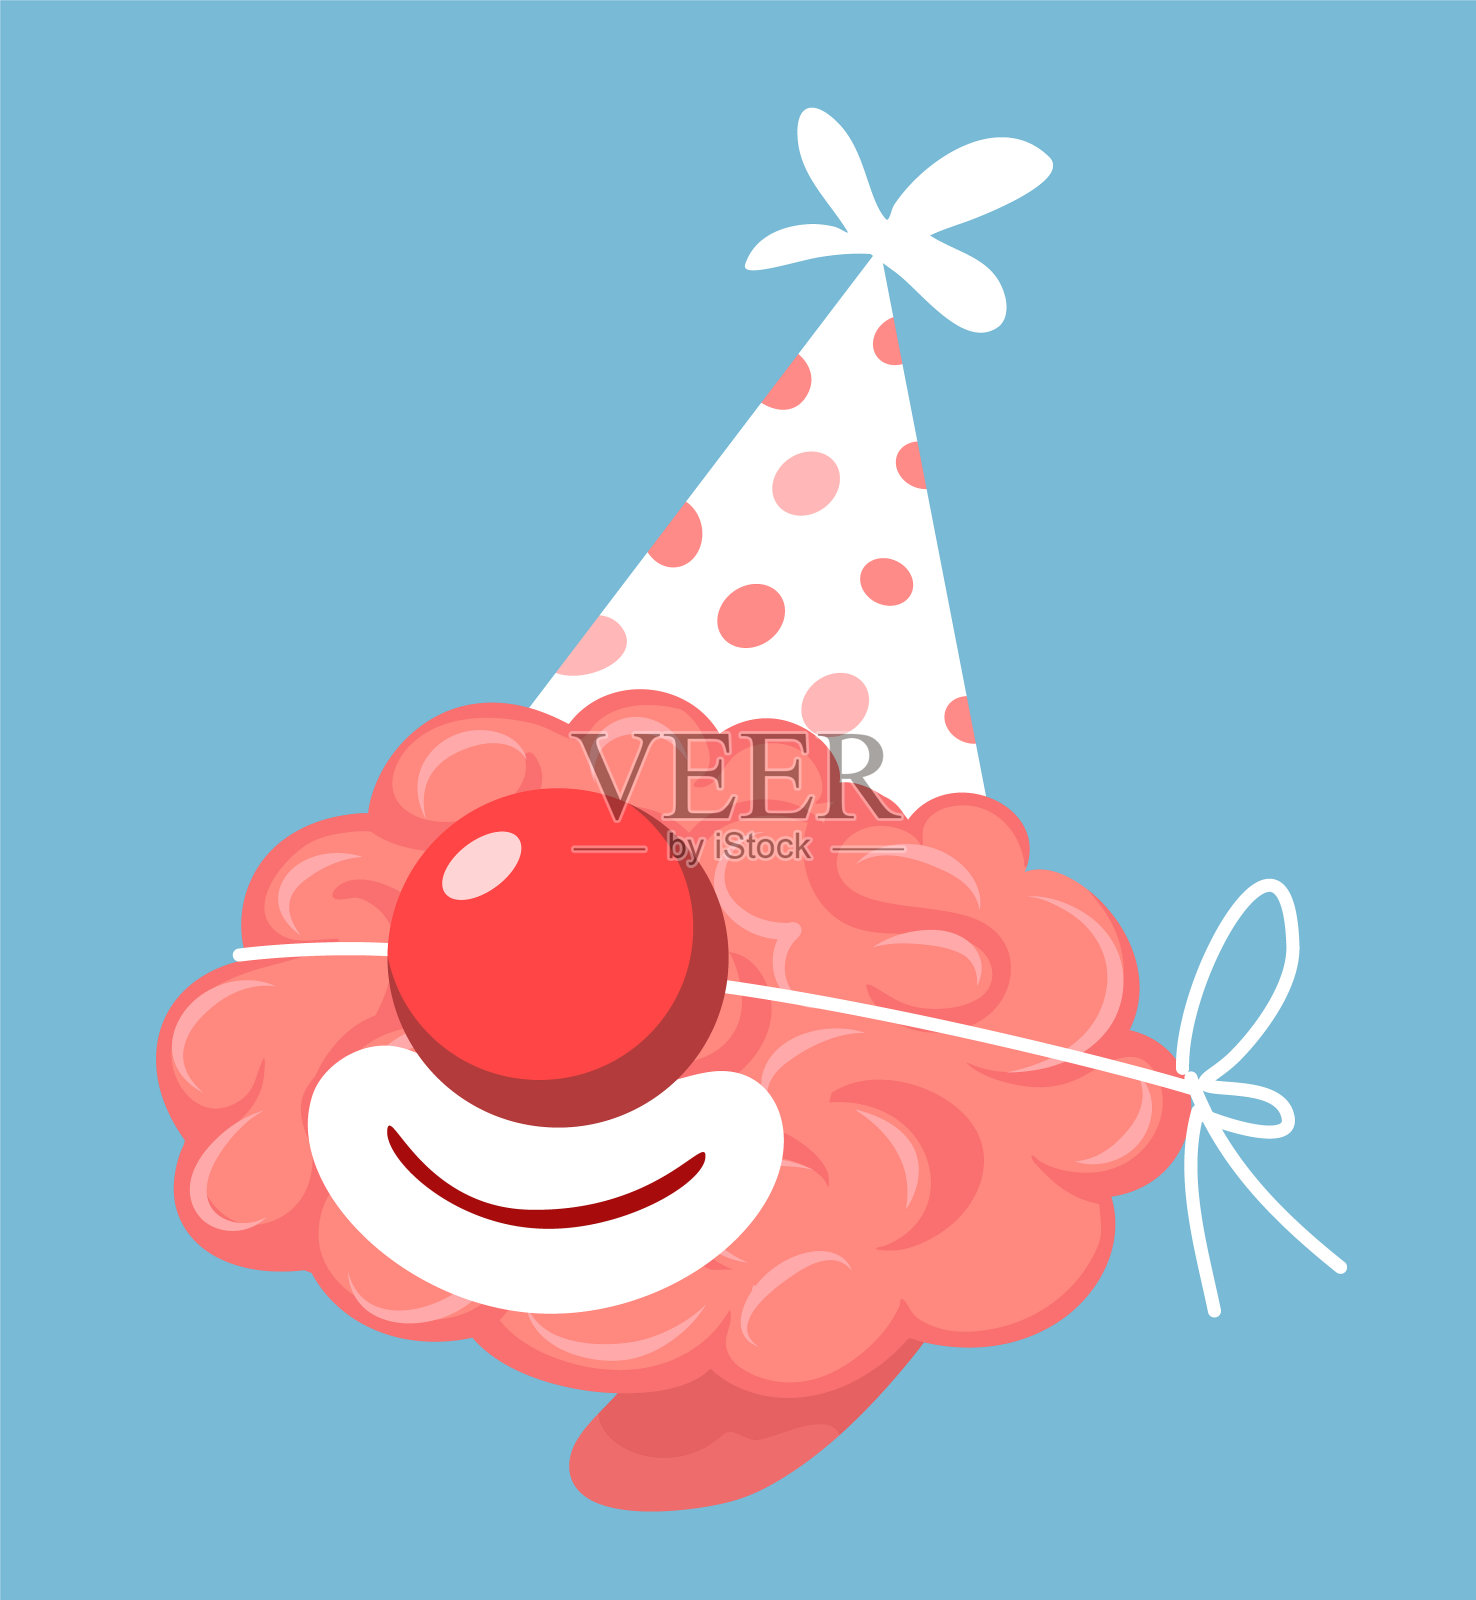 矢量假日插图粉红色聪明的人类大脑与生日帽子和红色小丑鼻子在蓝色背景。插画图片素材